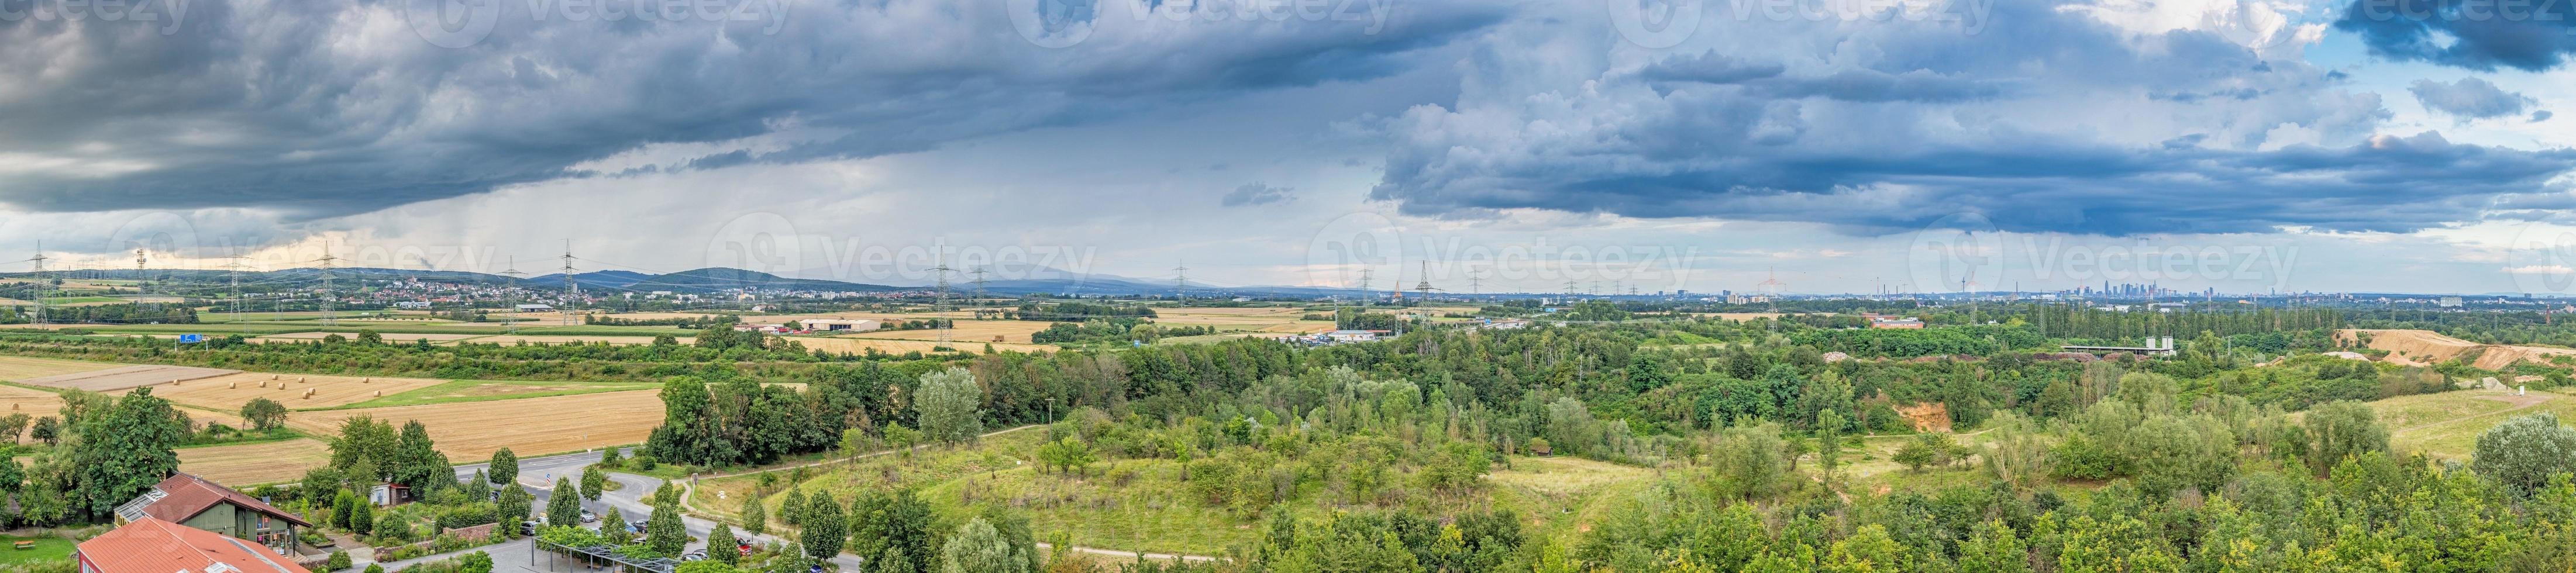 panoramico Visualizza di francoforte orizzonte e taunus-mitterlgebirge con mille dollari feldberg prese a partire dal sud-ovest direzione durante un' temporale foto